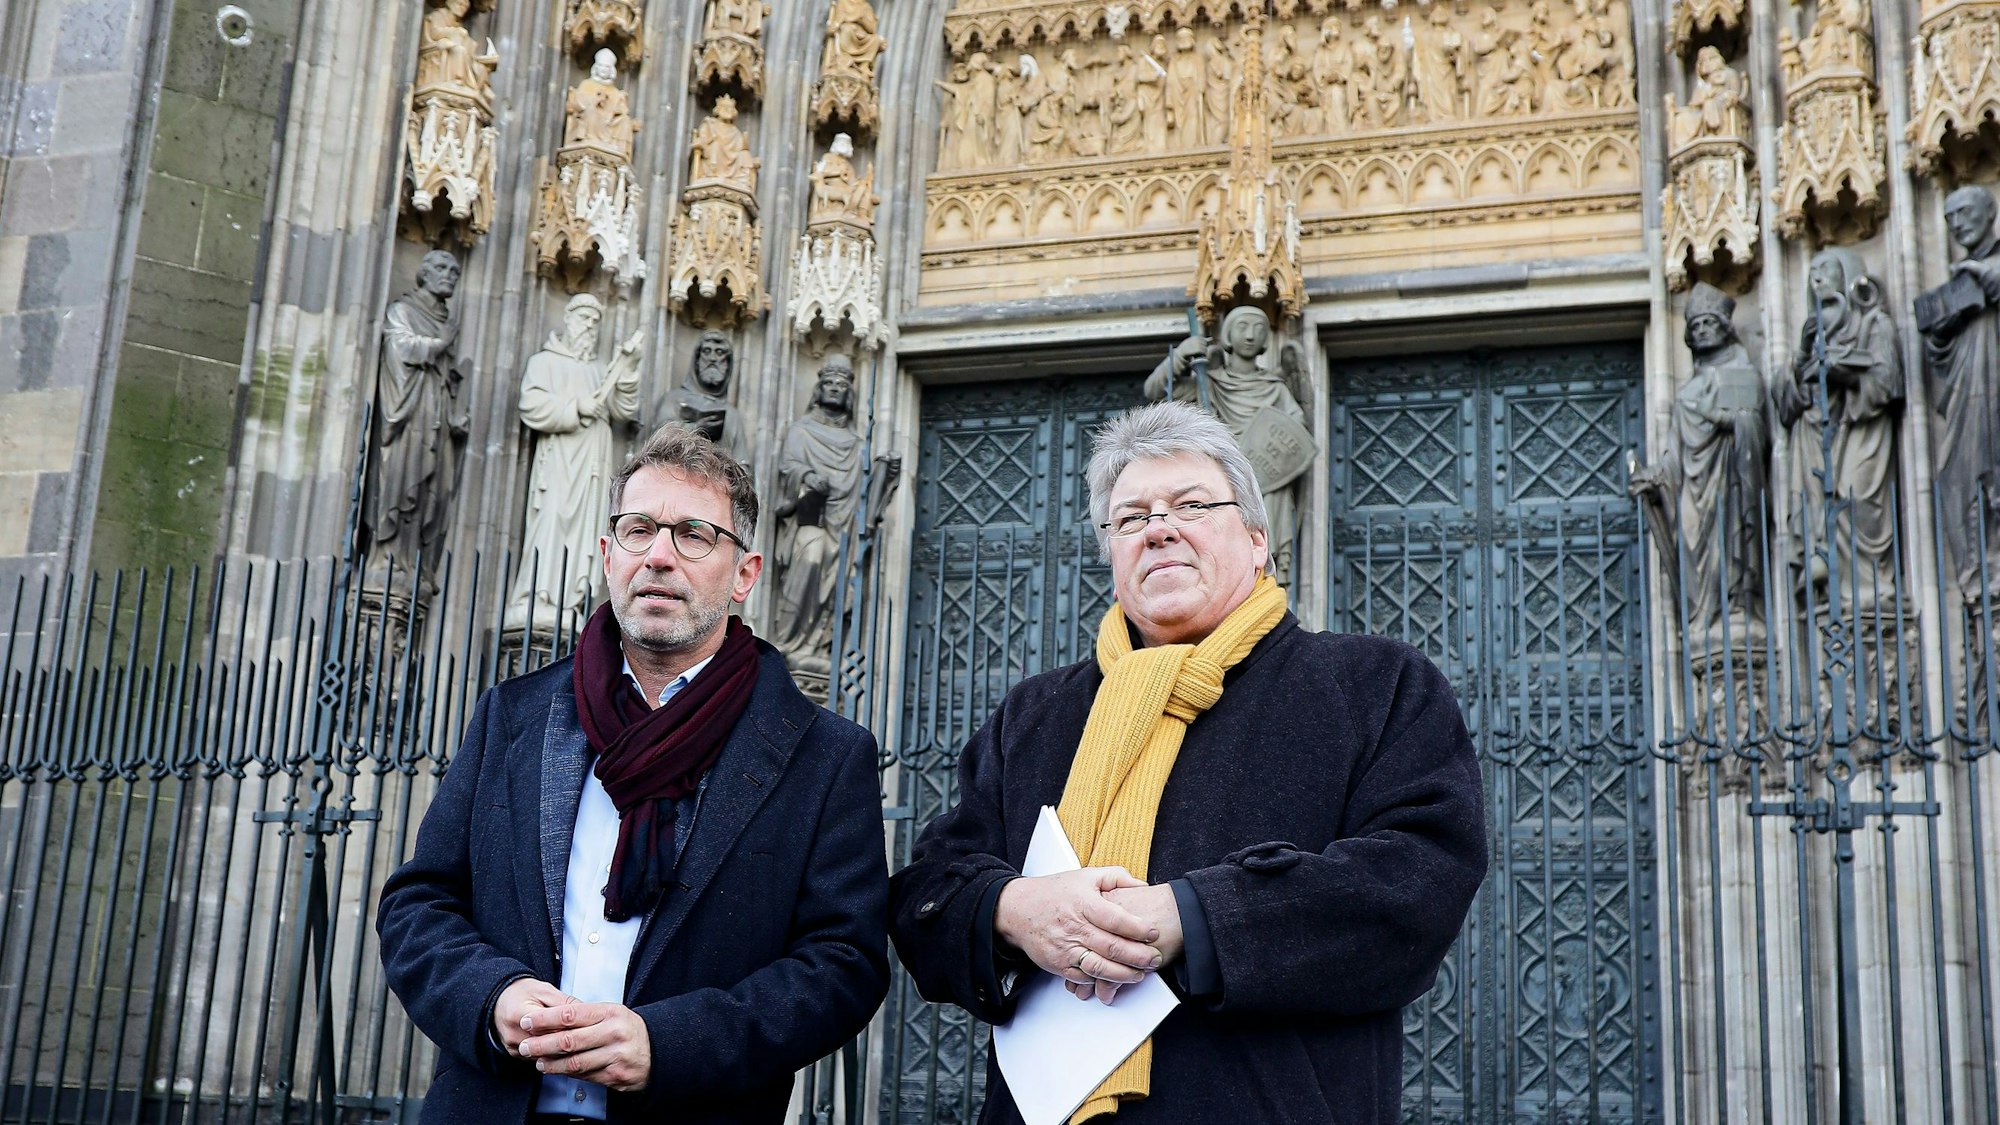 Zu sehen sind Dombaumeister Peter Füssenich und Präsident ZDV Dr. Albert Distelrath vor dem vollständig restaurierten Michaelsportal des Kölner Doms.